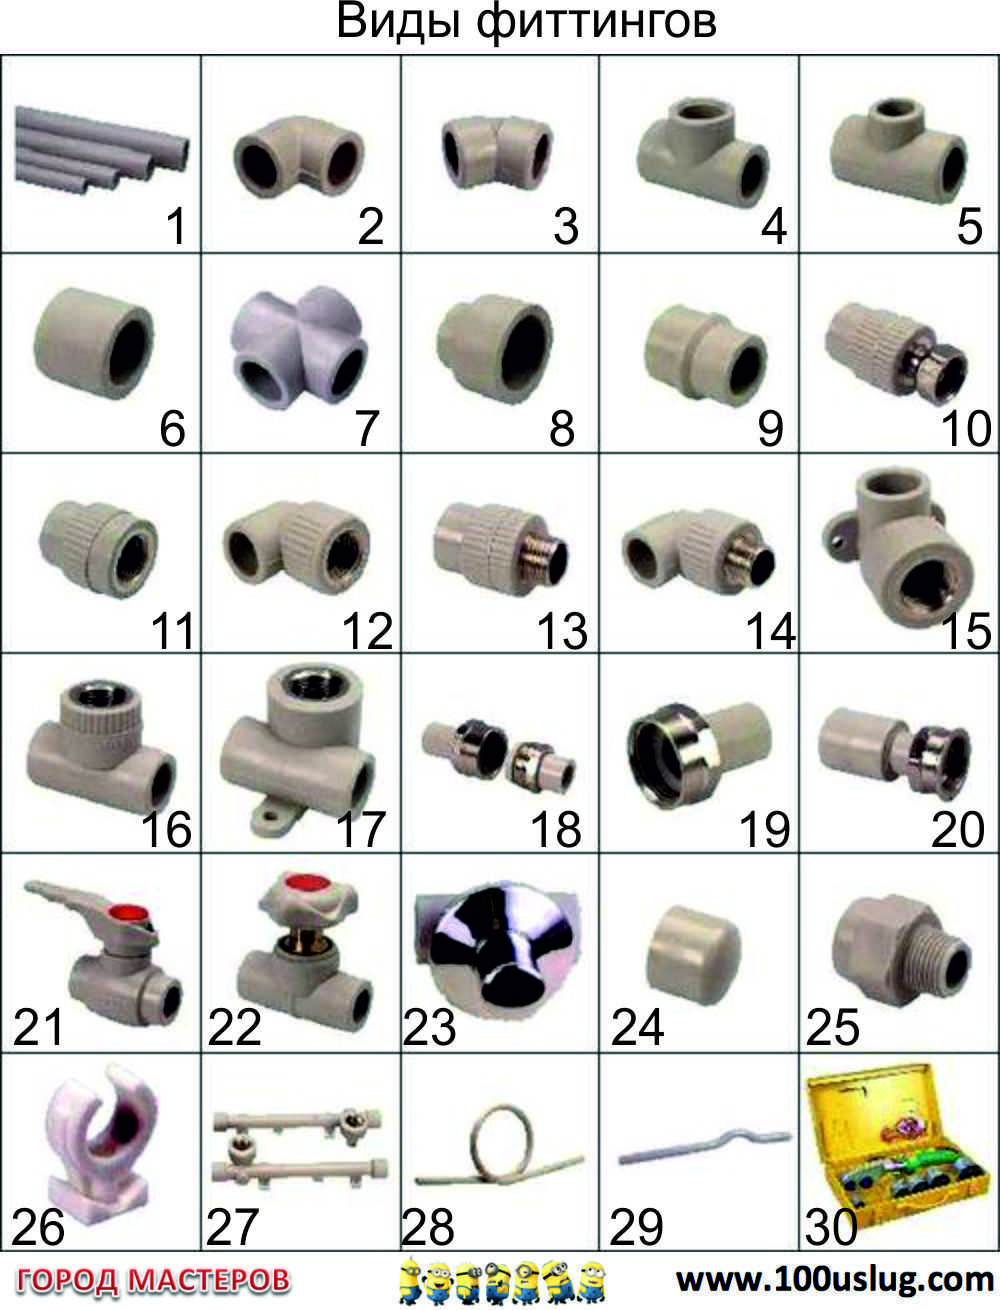 Металлопластиковые трубы и фитинги: технические характеристики и маркировка